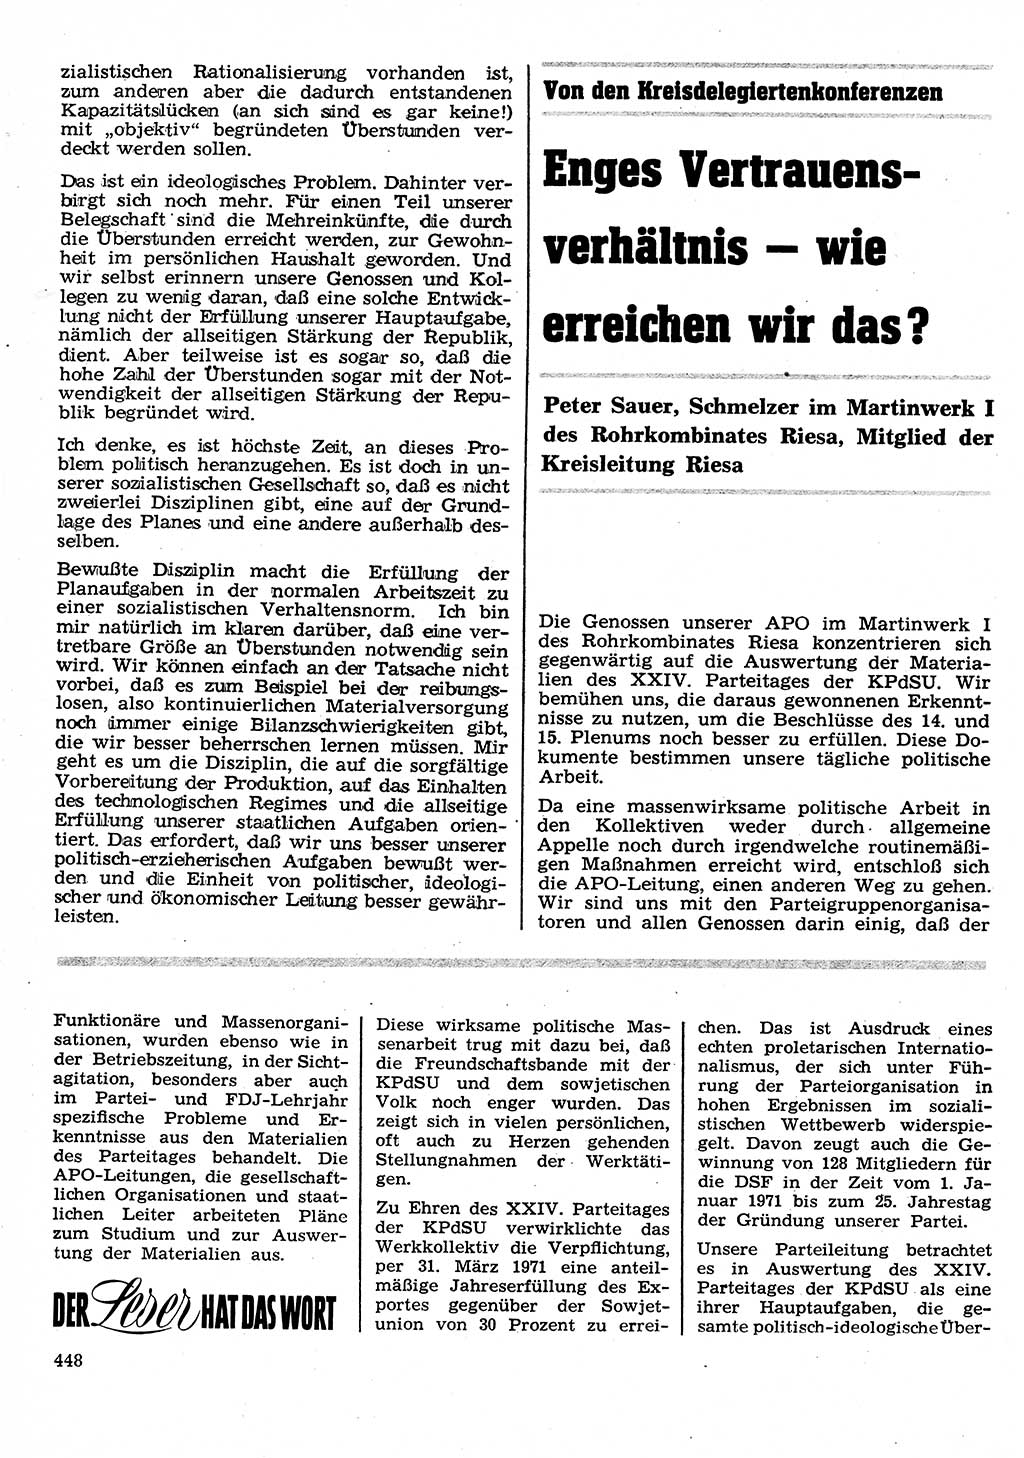 Neuer Weg (NW), Organ des Zentralkomitees (ZK) der SED (Sozialistische Einheitspartei Deutschlands) für Fragen des Parteilebens, 26. Jahrgang [Deutsche Demokratische Republik (DDR)] 1971, Seite 448 (NW ZK SED DDR 1971, S. 448)